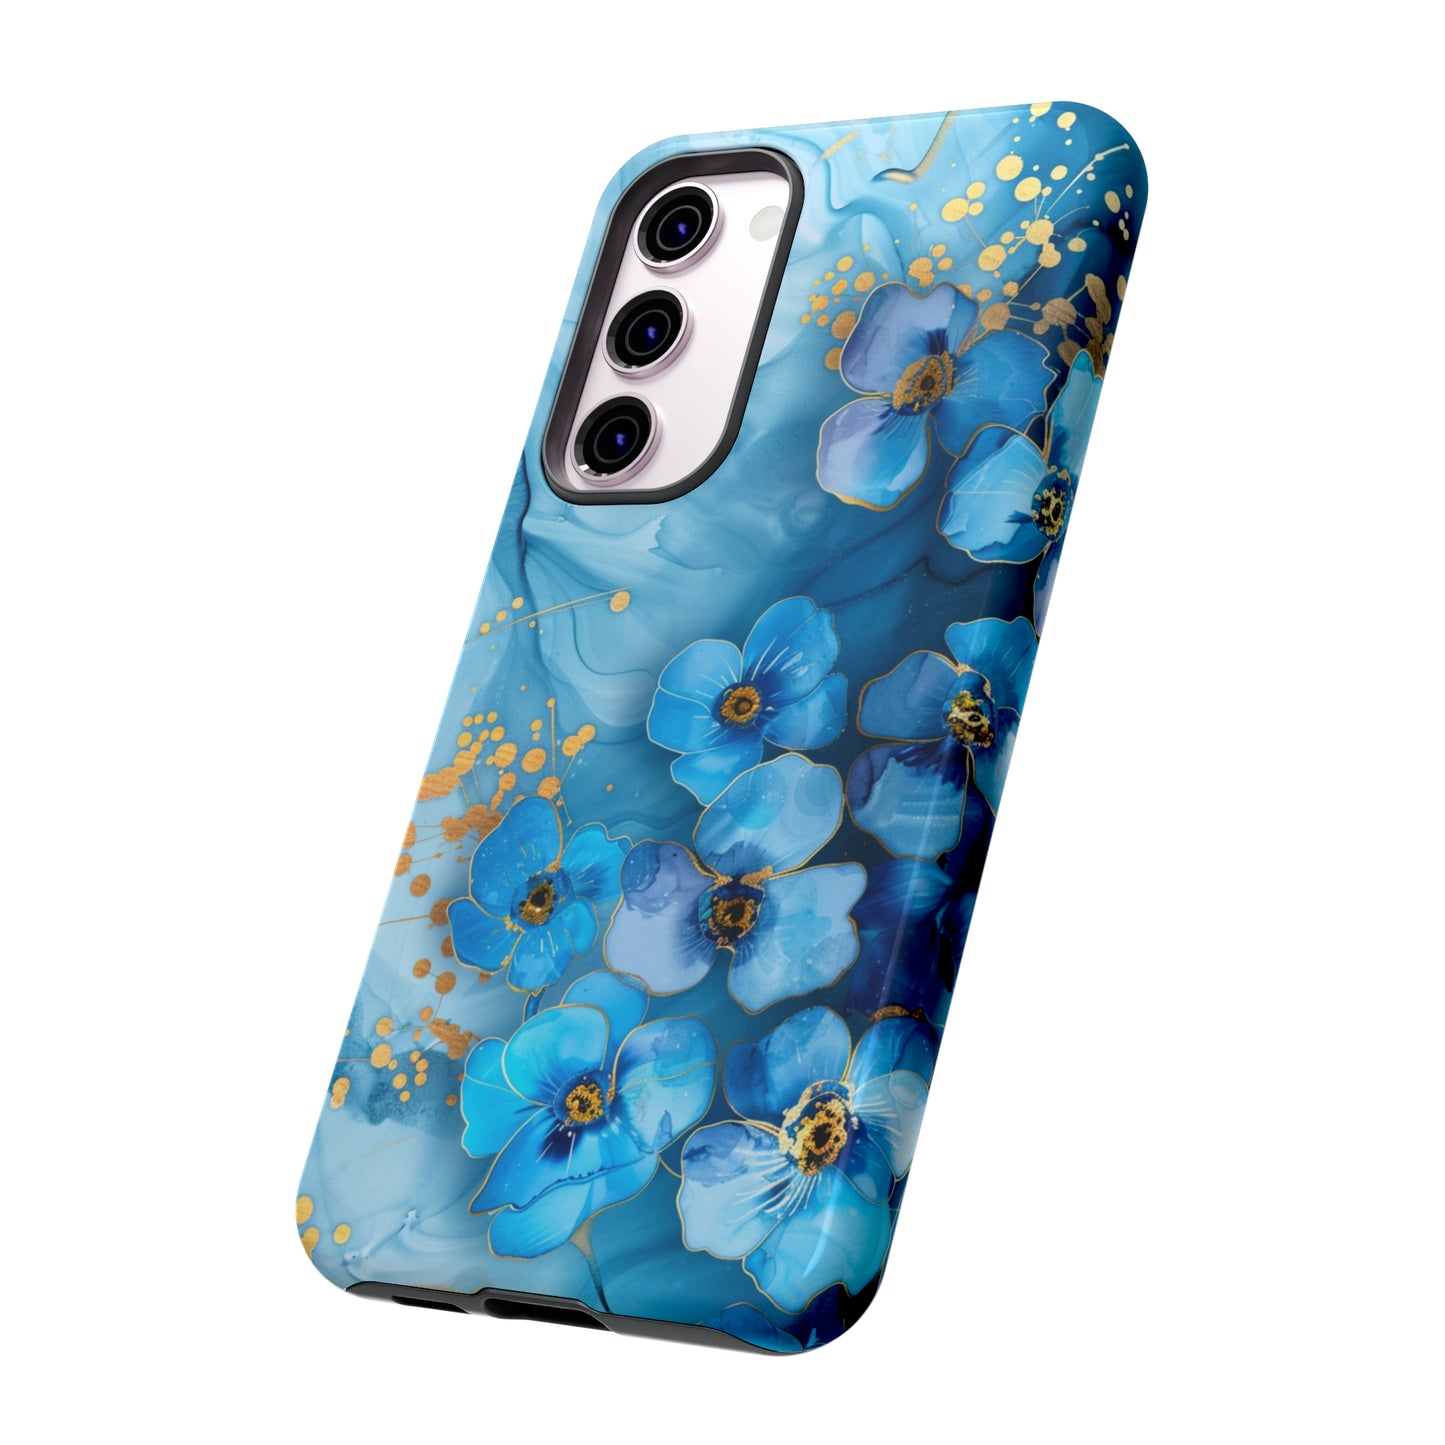 Forget Me Nots Gold Color Splash Floral Design Phone Case